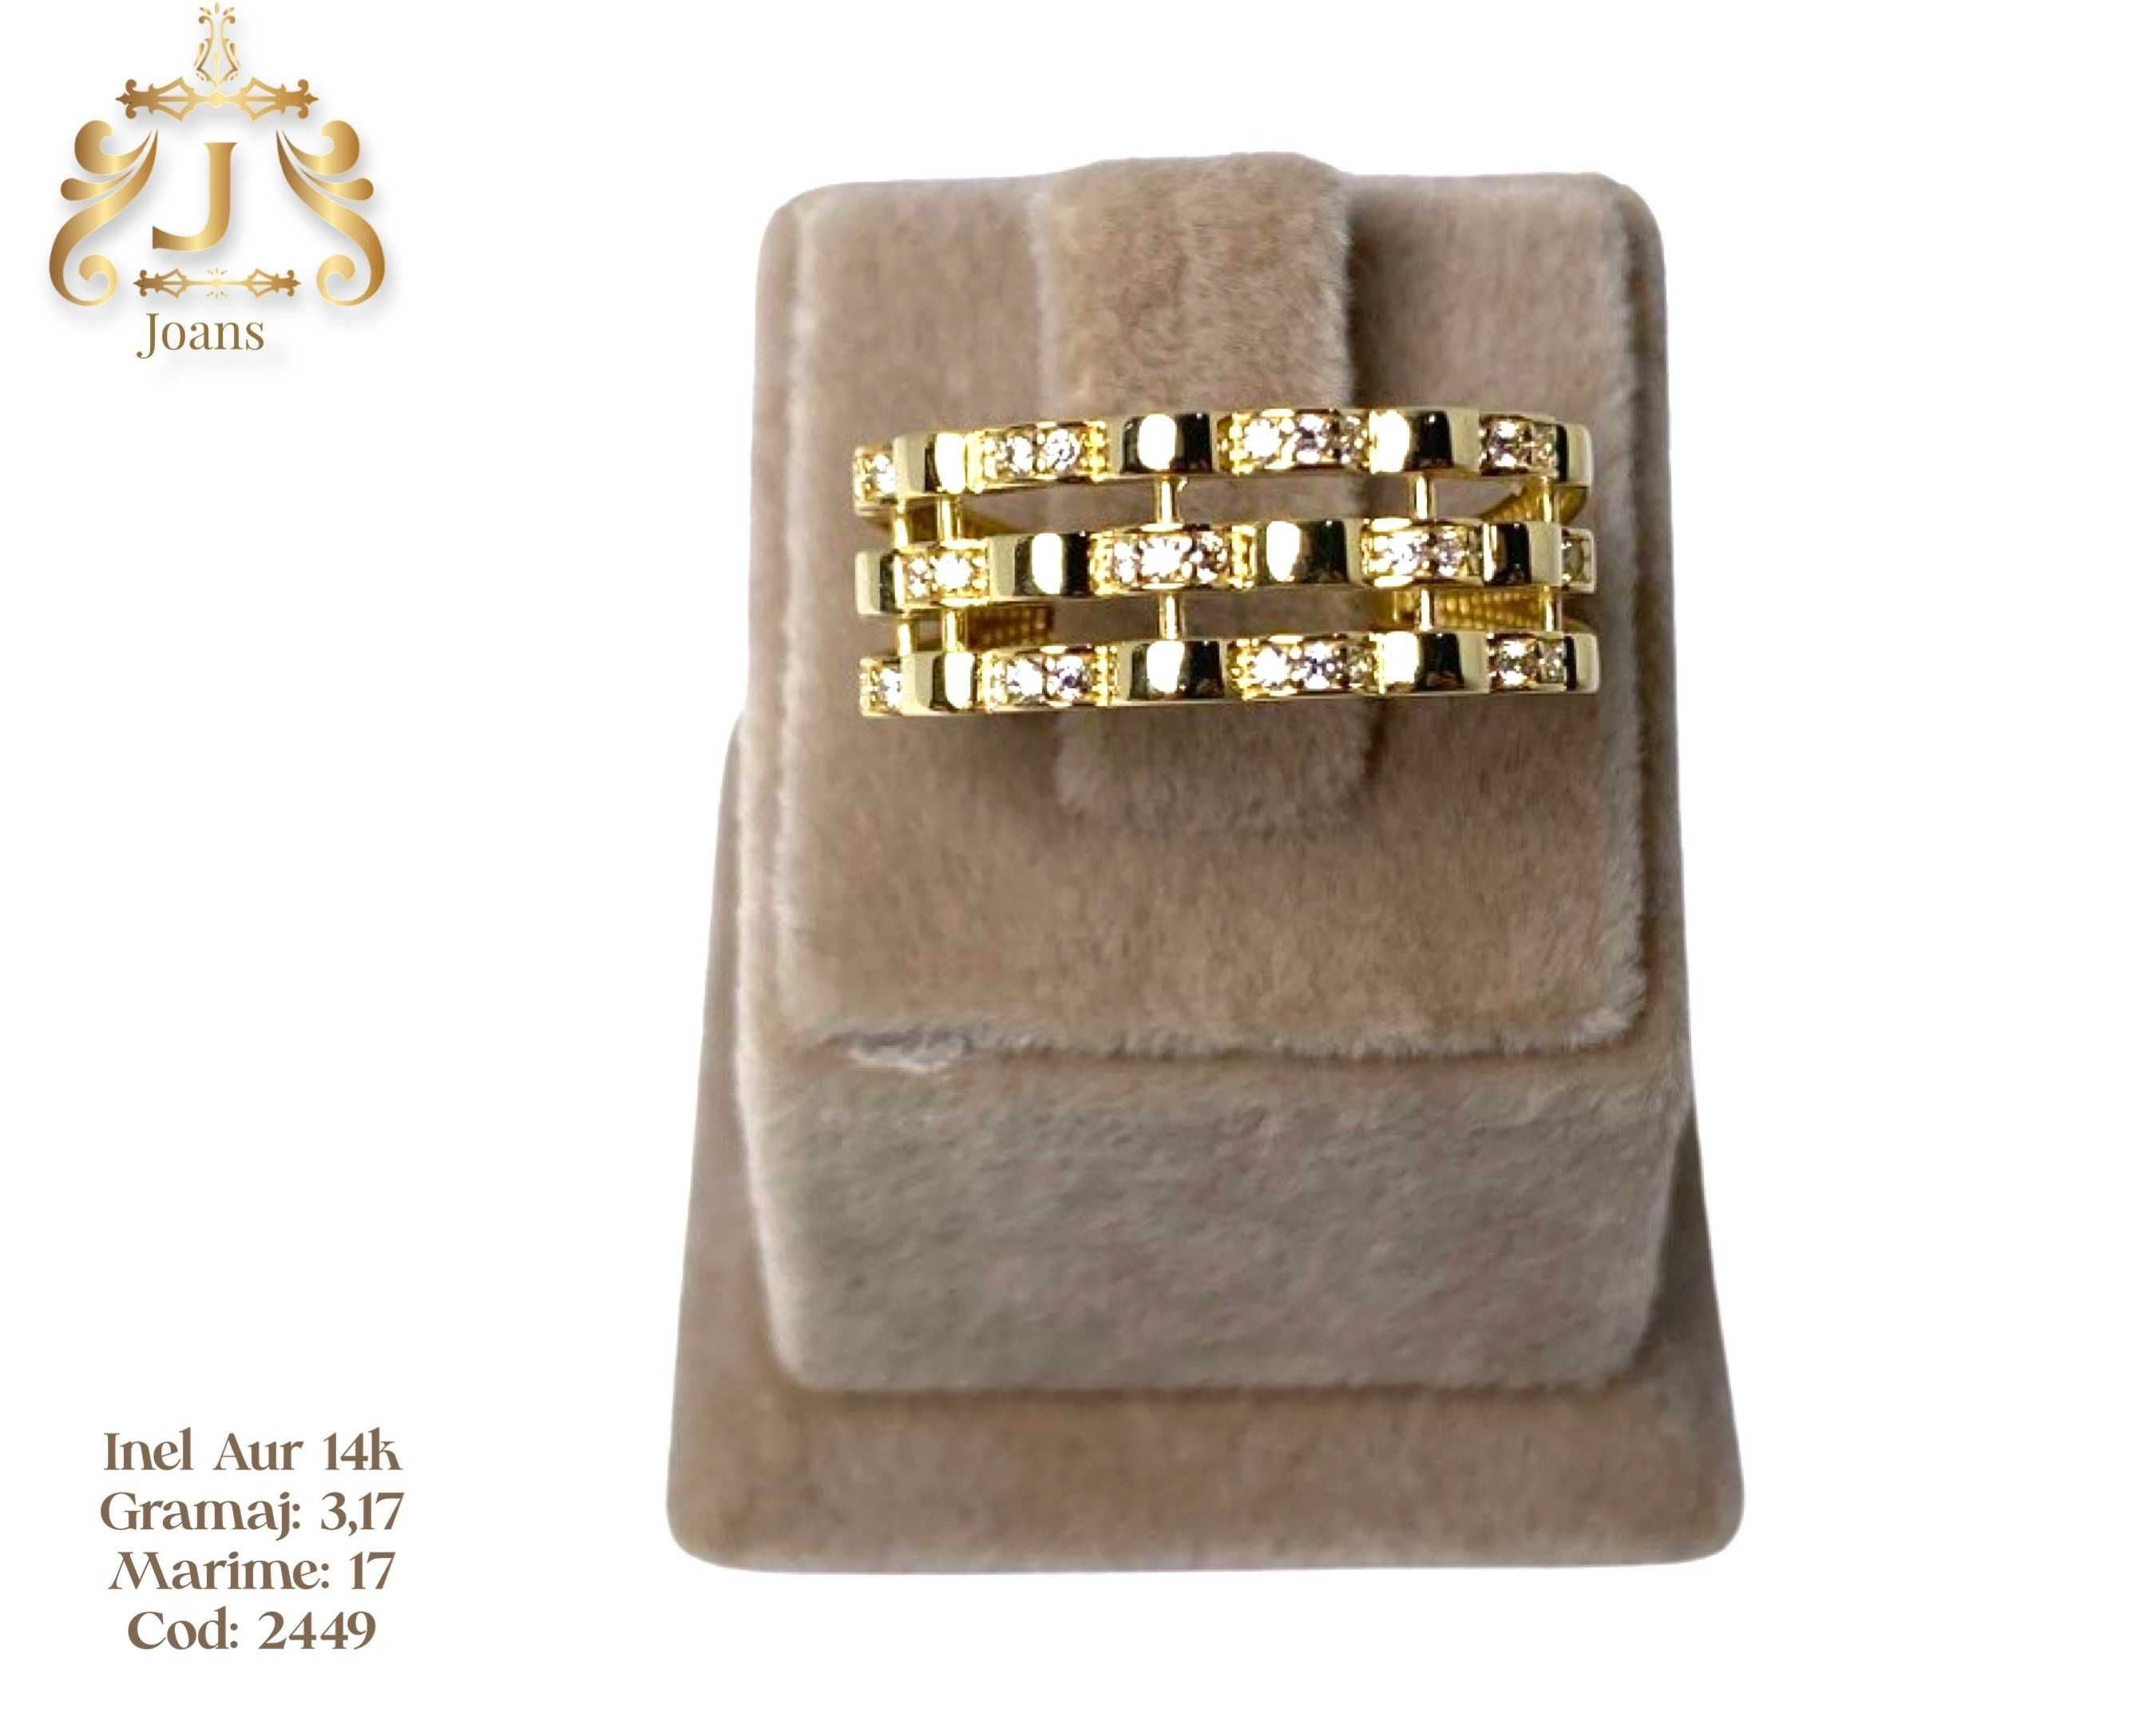 (2448) Inel Aur 14k, 3,17 grame FB Bijoux Euro Gold 320 lei gr